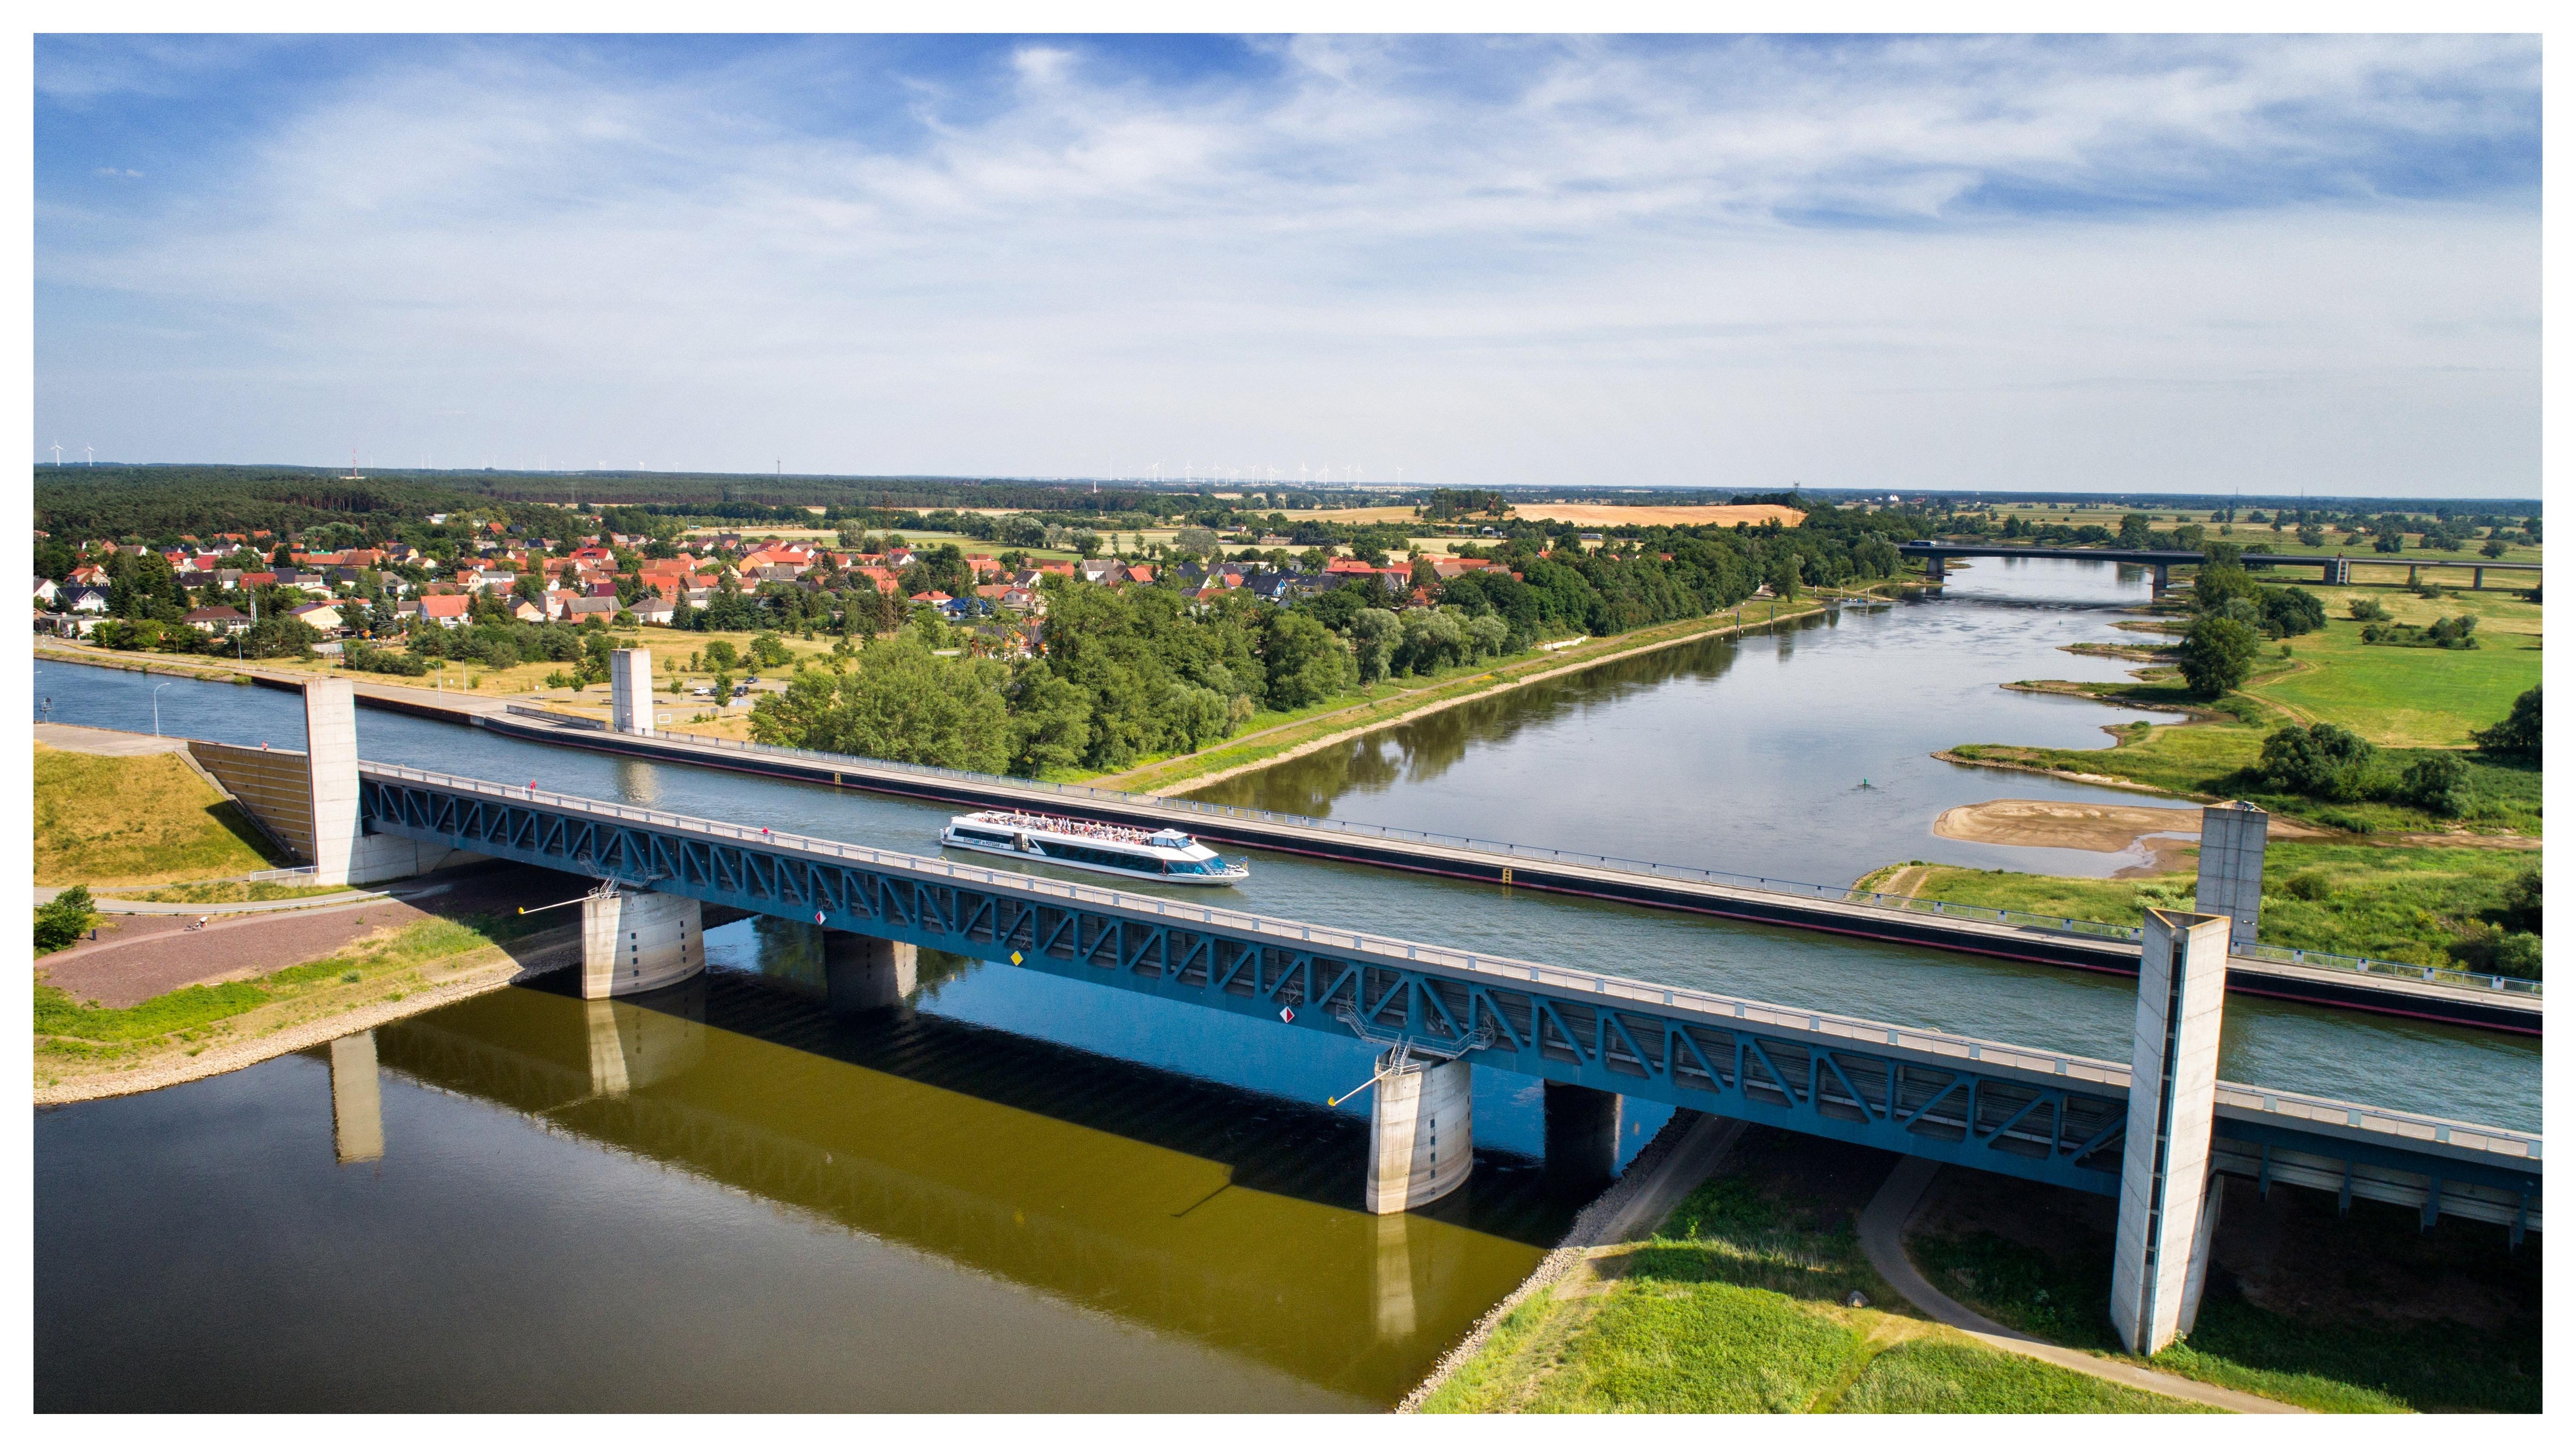 Die MS Belvedere auf der Ganztagesreise nach Magdeburg, auf der Trogbrücke bei Hohenwarthe.